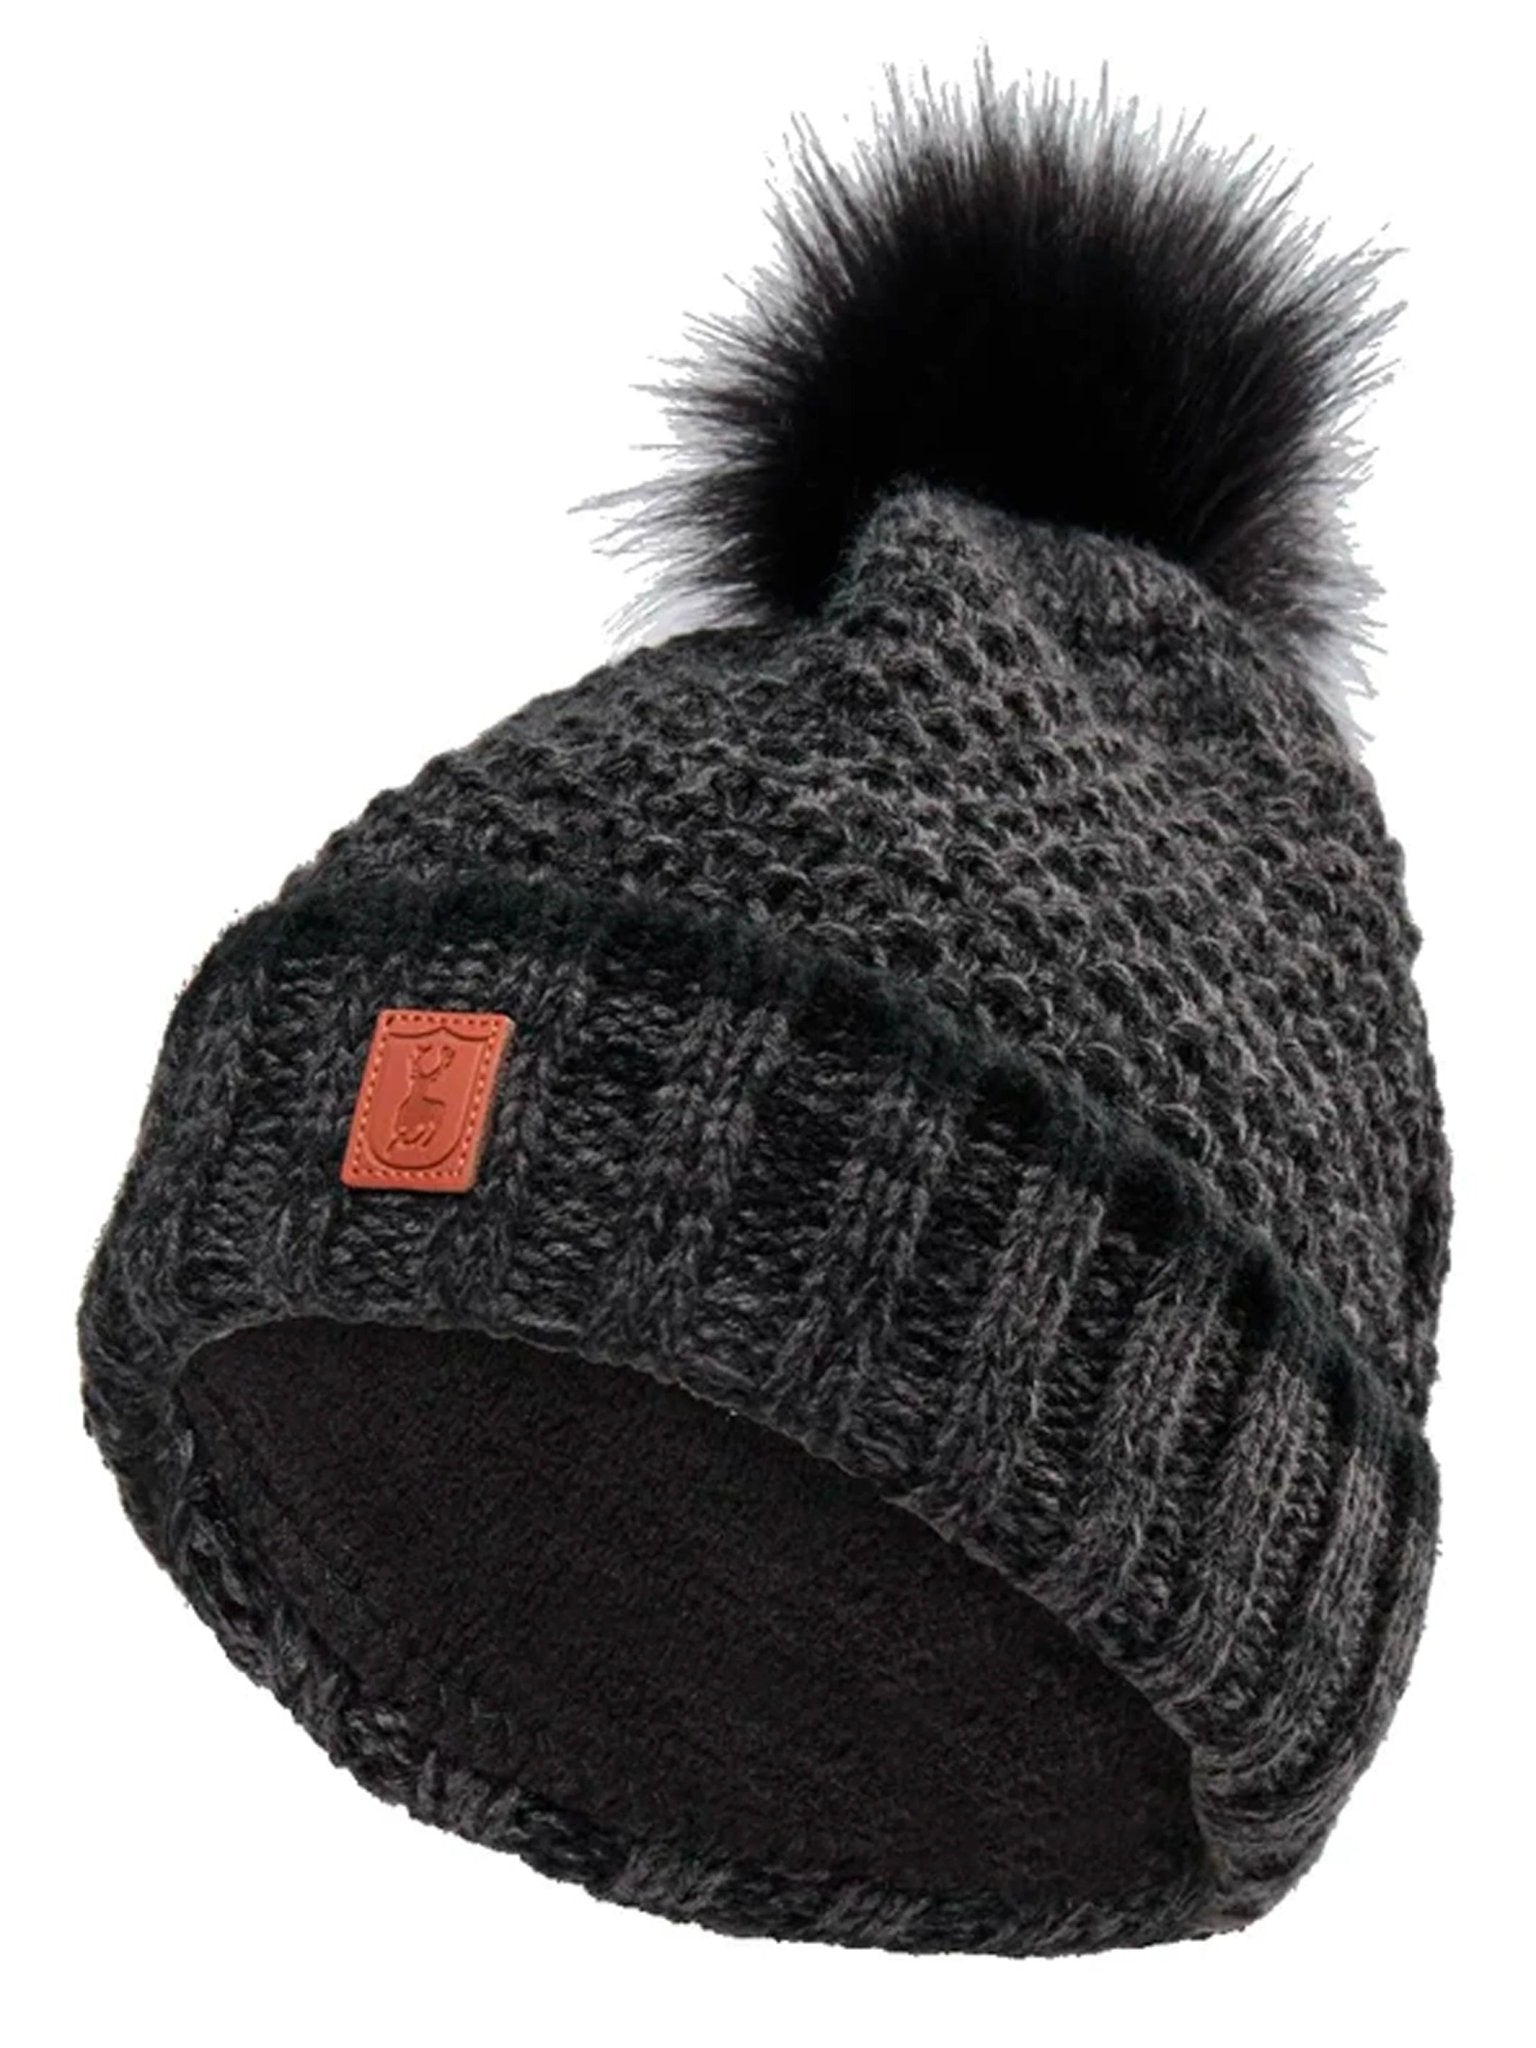 4elementsclothingDeerhunterDeerhunter - Ladies bobble hat knitted country HatLadies Headwear6486-999